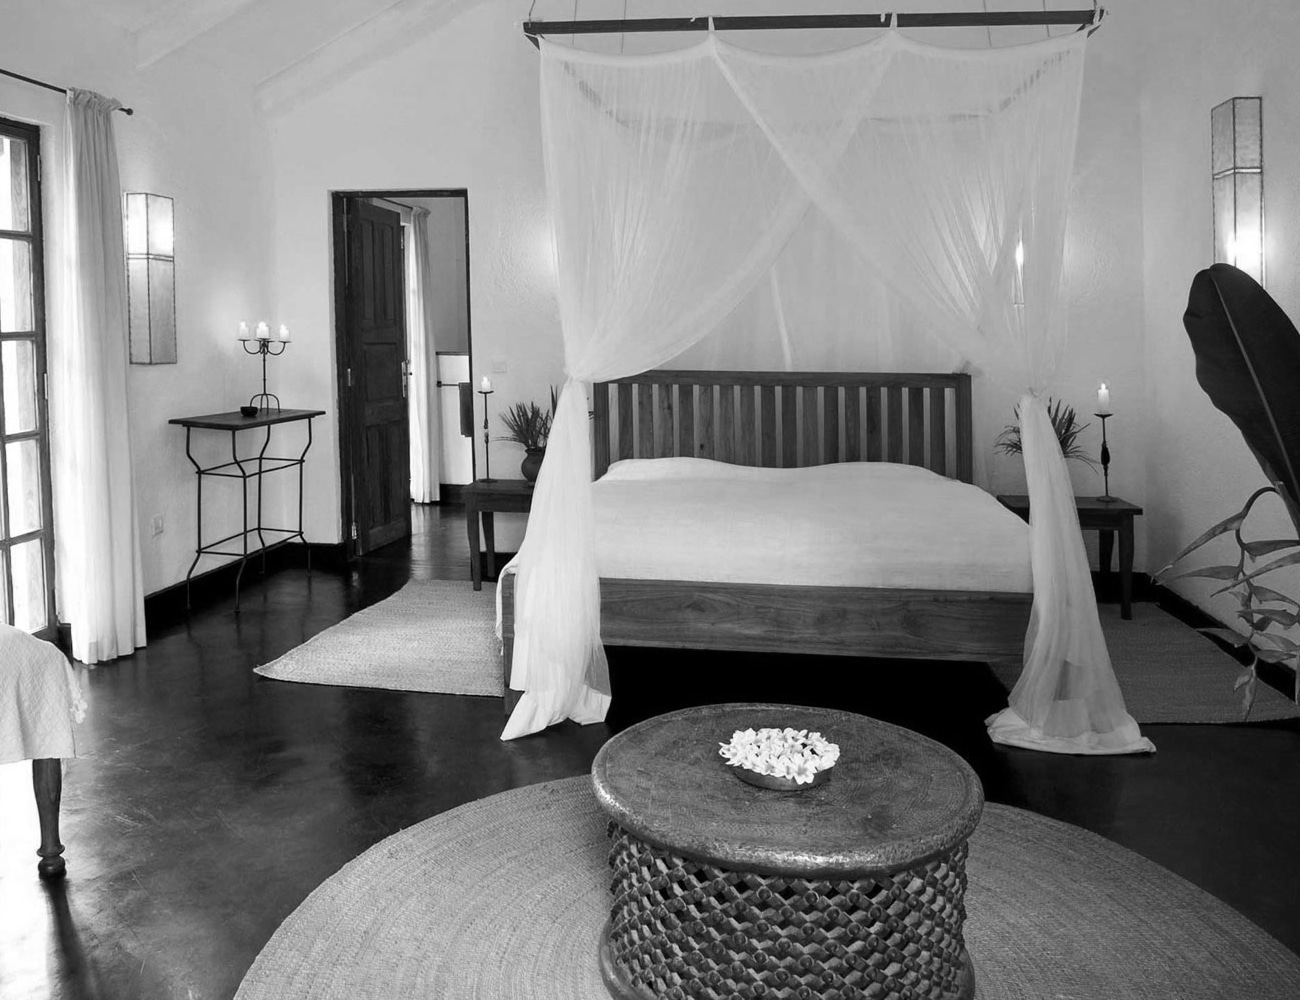 Bedrooms at Plantation Lodge